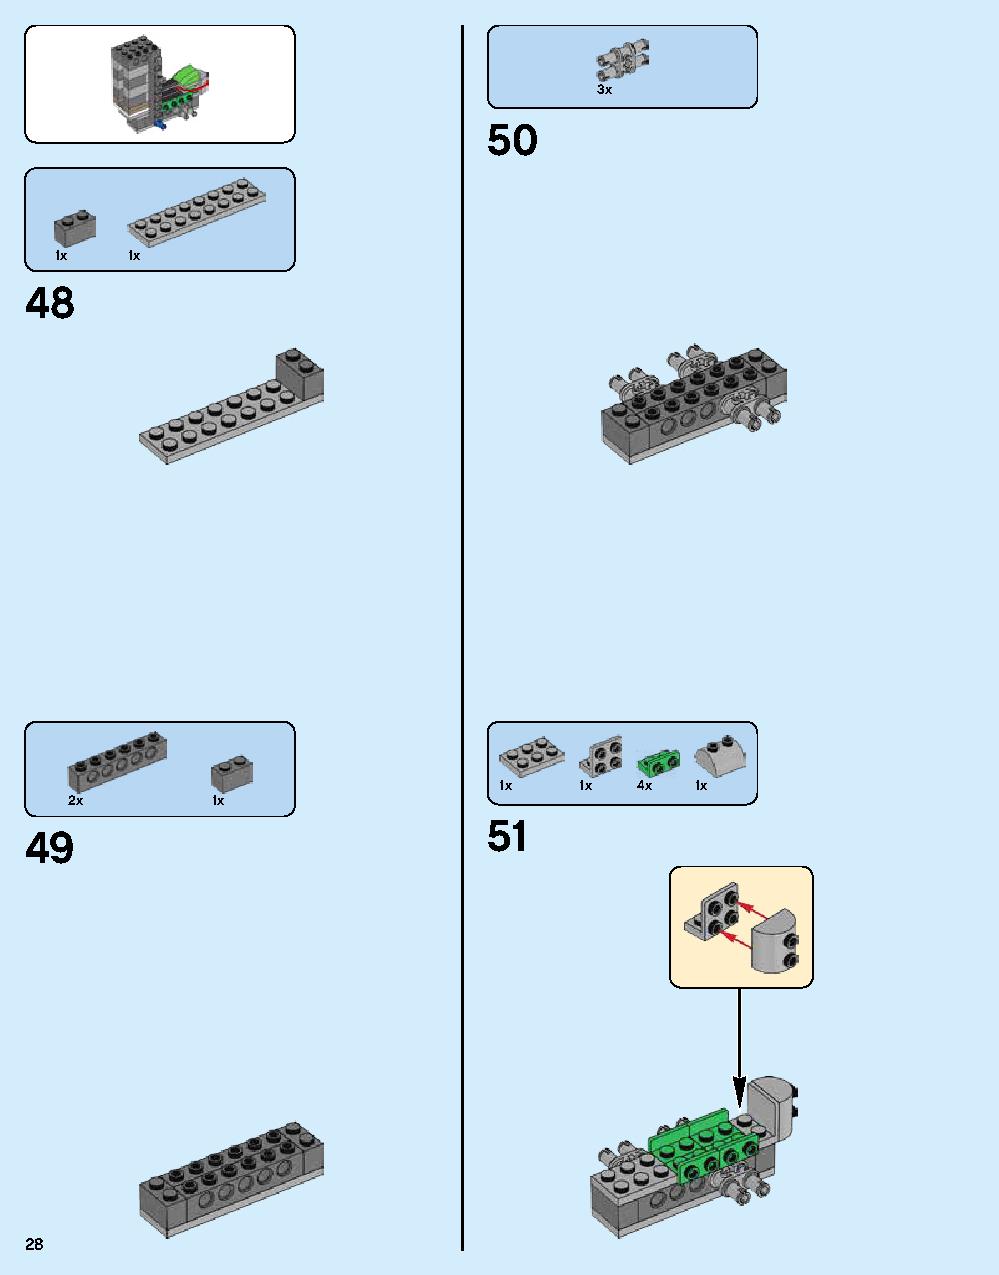 ニンジャゴー シティ 70620 レゴの商品情報 レゴの説明書・組立方法 28 page